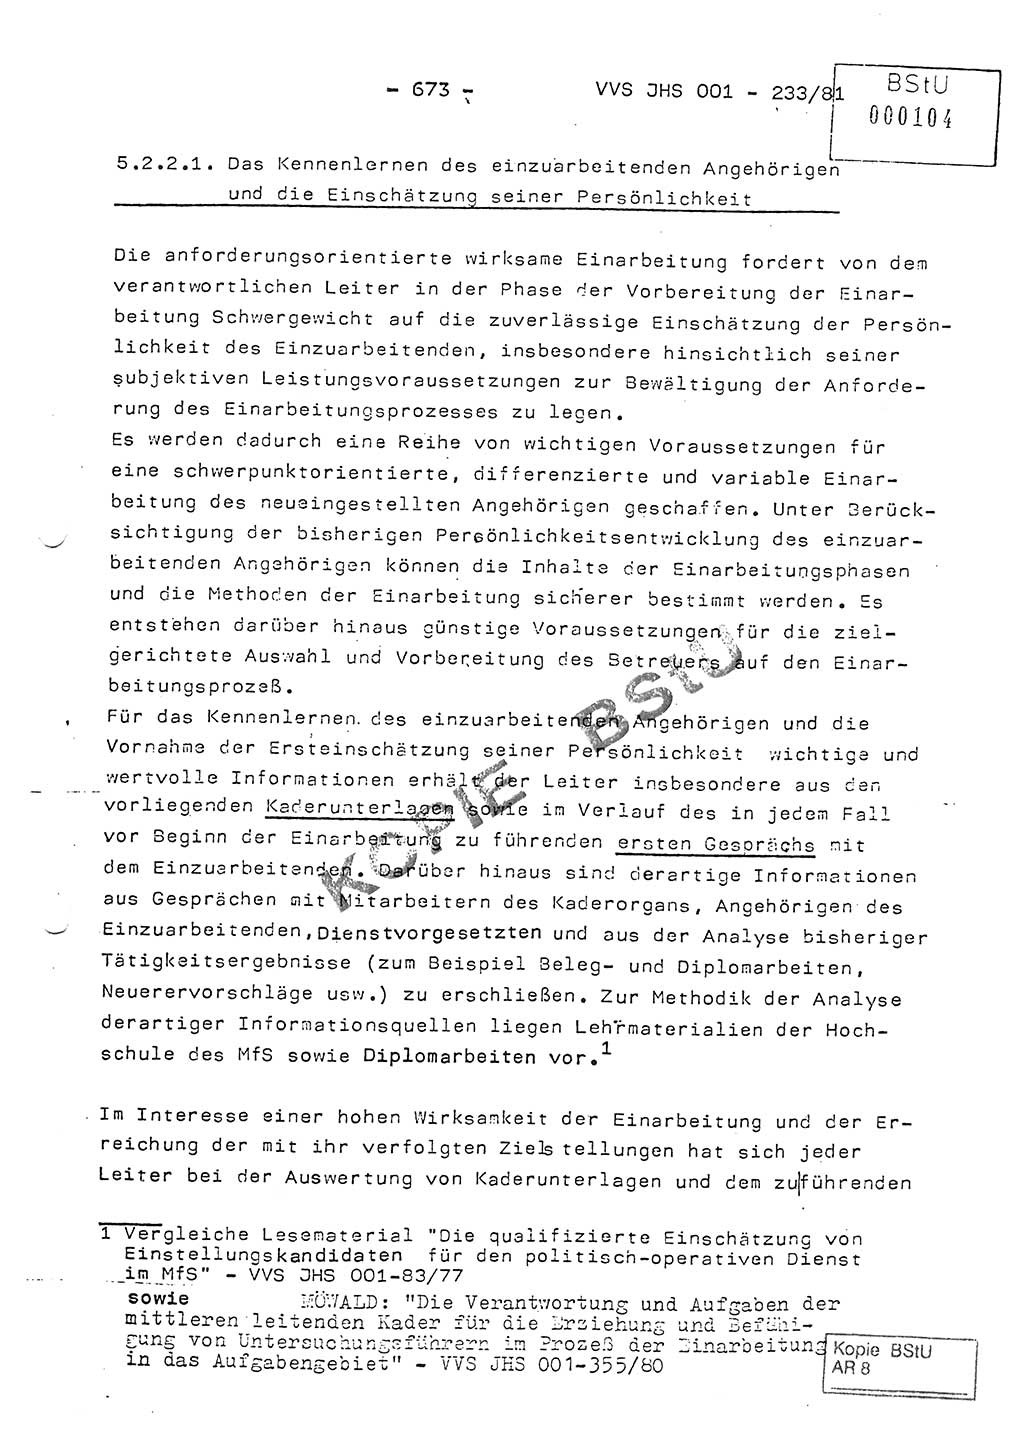 Dissertation Oberstleutnant Horst Zank (JHS), Oberstleutnant Dr. Karl-Heinz Knoblauch (JHS), Oberstleutnant Gustav-Adolf Kowalewski (HA Ⅸ), Oberstleutnant Wolfgang Plötner (HA Ⅸ), Ministerium für Staatssicherheit (MfS) [Deutsche Demokratische Republik (DDR)], Juristische Hochschule (JHS), Vertrauliche Verschlußsache (VVS) o001-233/81, Potsdam 1981, Blatt 673 (Diss. MfS DDR JHS VVS o001-233/81 1981, Bl. 673)